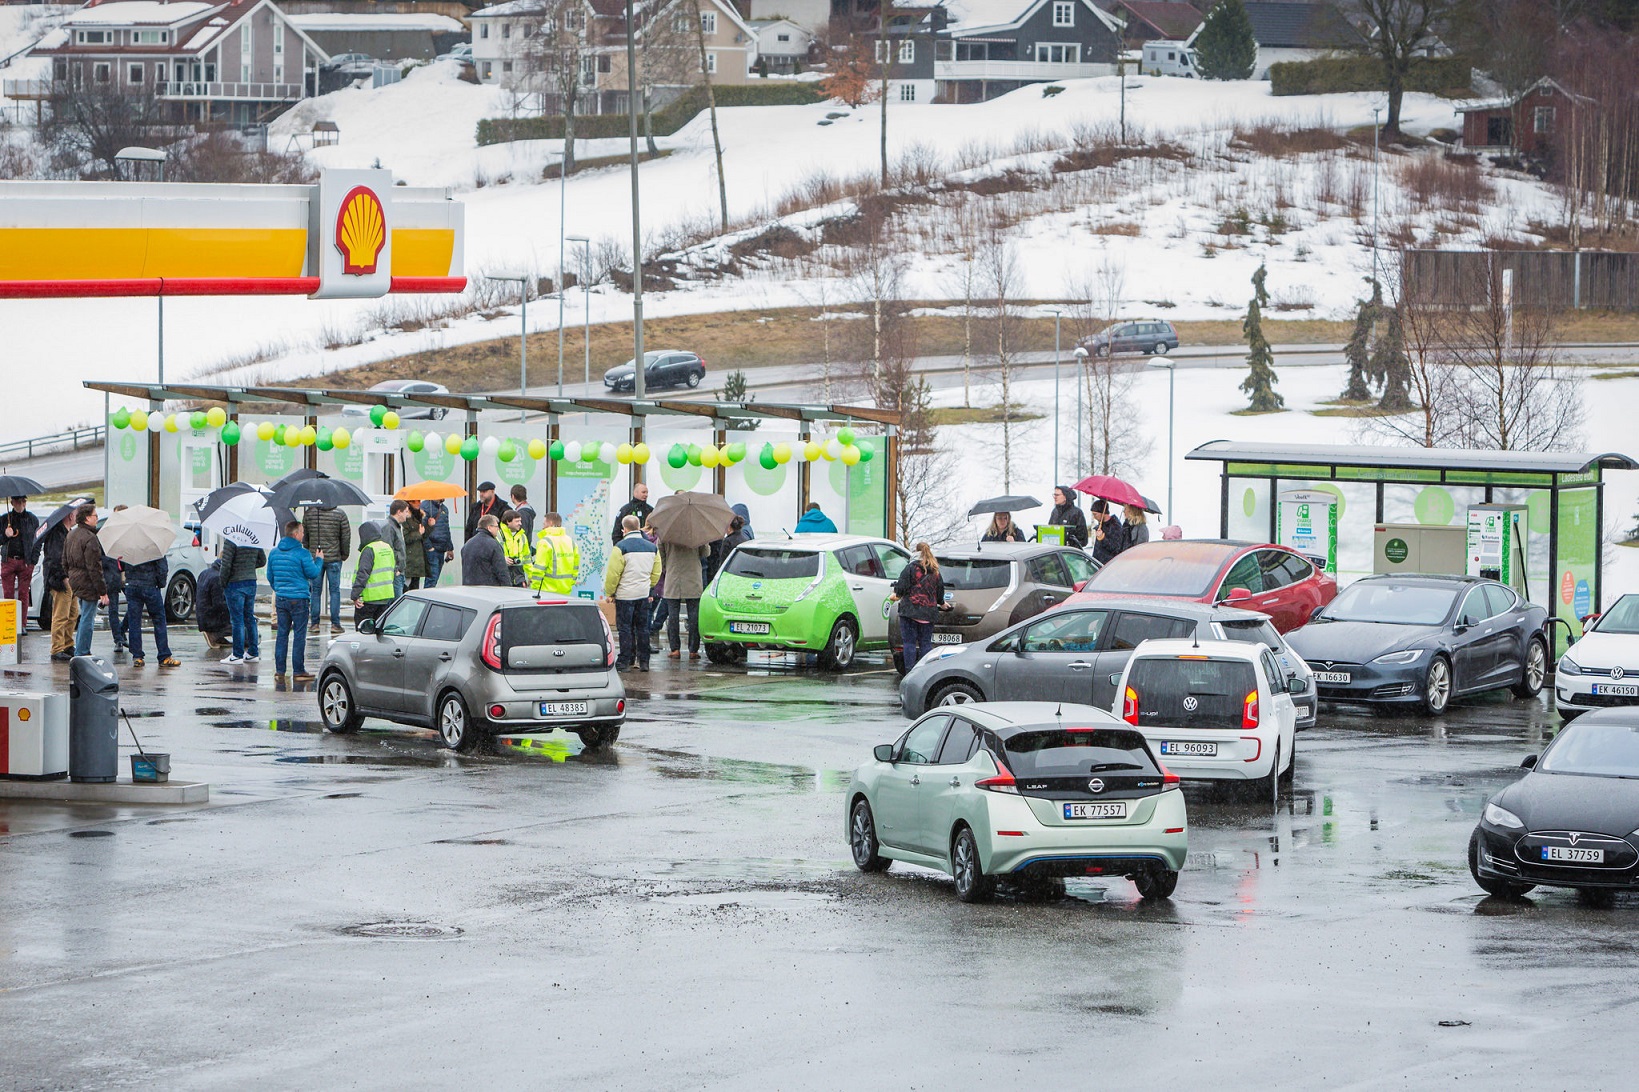 Η χώρα με τα περισσότερα ηλεκτρικά αυτοκίνητα ανά κάτοικο, η Νορβηγία, μόλις απέκτησε τον πρώτο σταθμό φόρτισης υψηλής ισχύος, που είναι μέρος του διαδρόμου φόρτισης (HPC) που κατασκευάζεται για να συνδέσει το Όσλο, τη Στοκχόλμη και το Ελσίνκι.